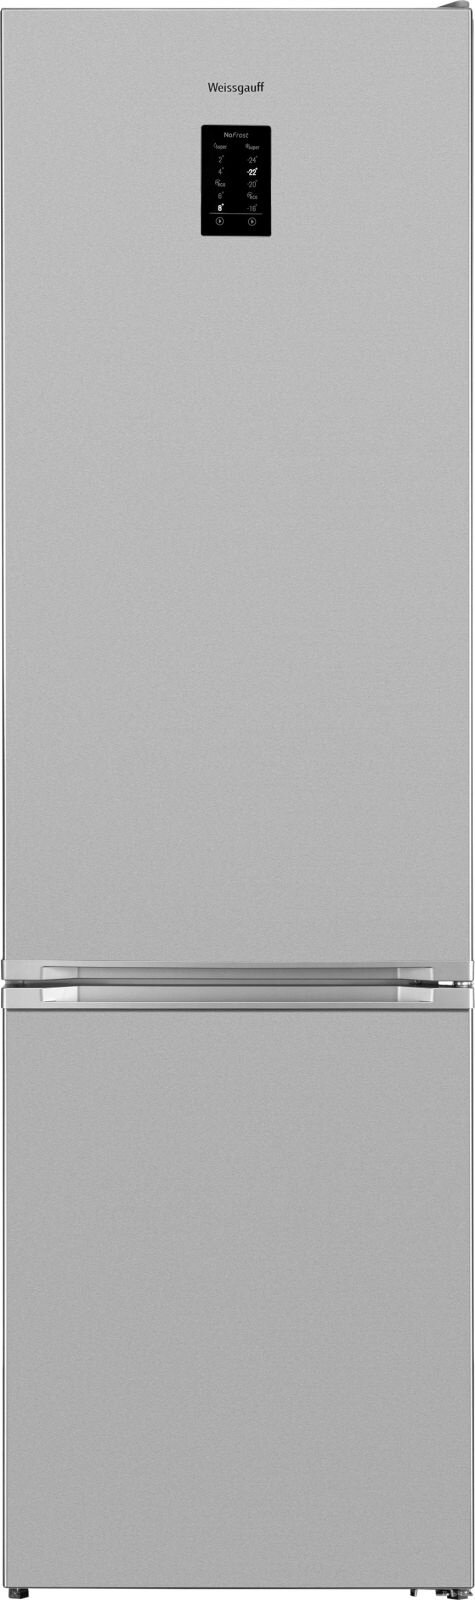 Холодильник Weissgauff WRK 2010 DX Total NoFrost нержавеющая сталь (двухкамерный)